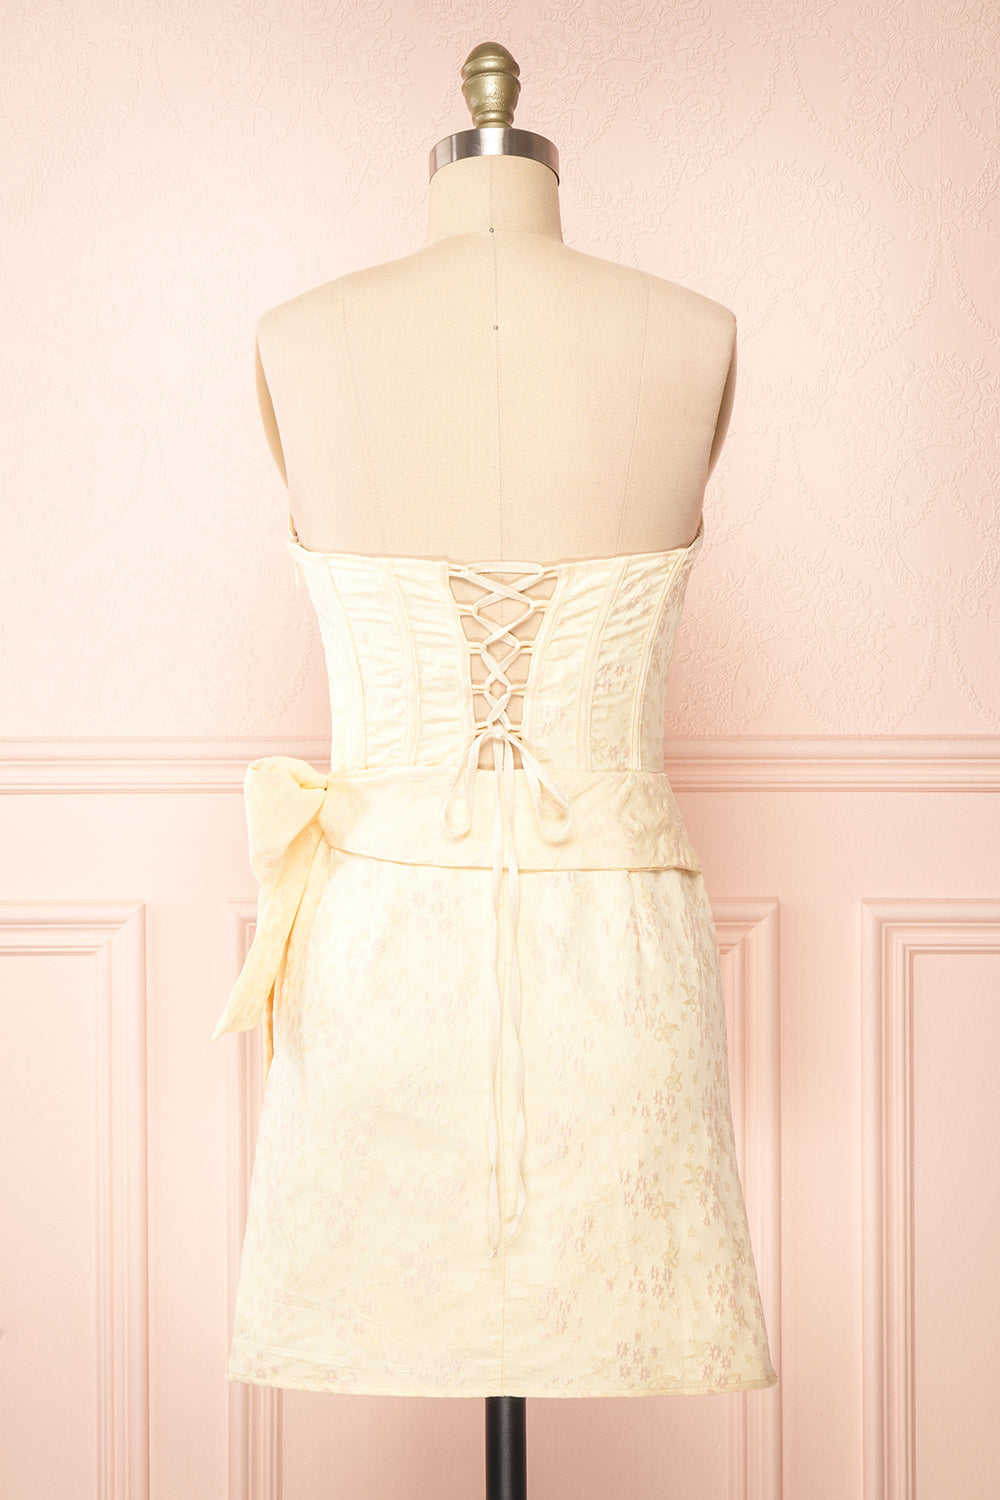 Seorie Strapless Corset Short Floral Dress | Boutique 1861 back view 